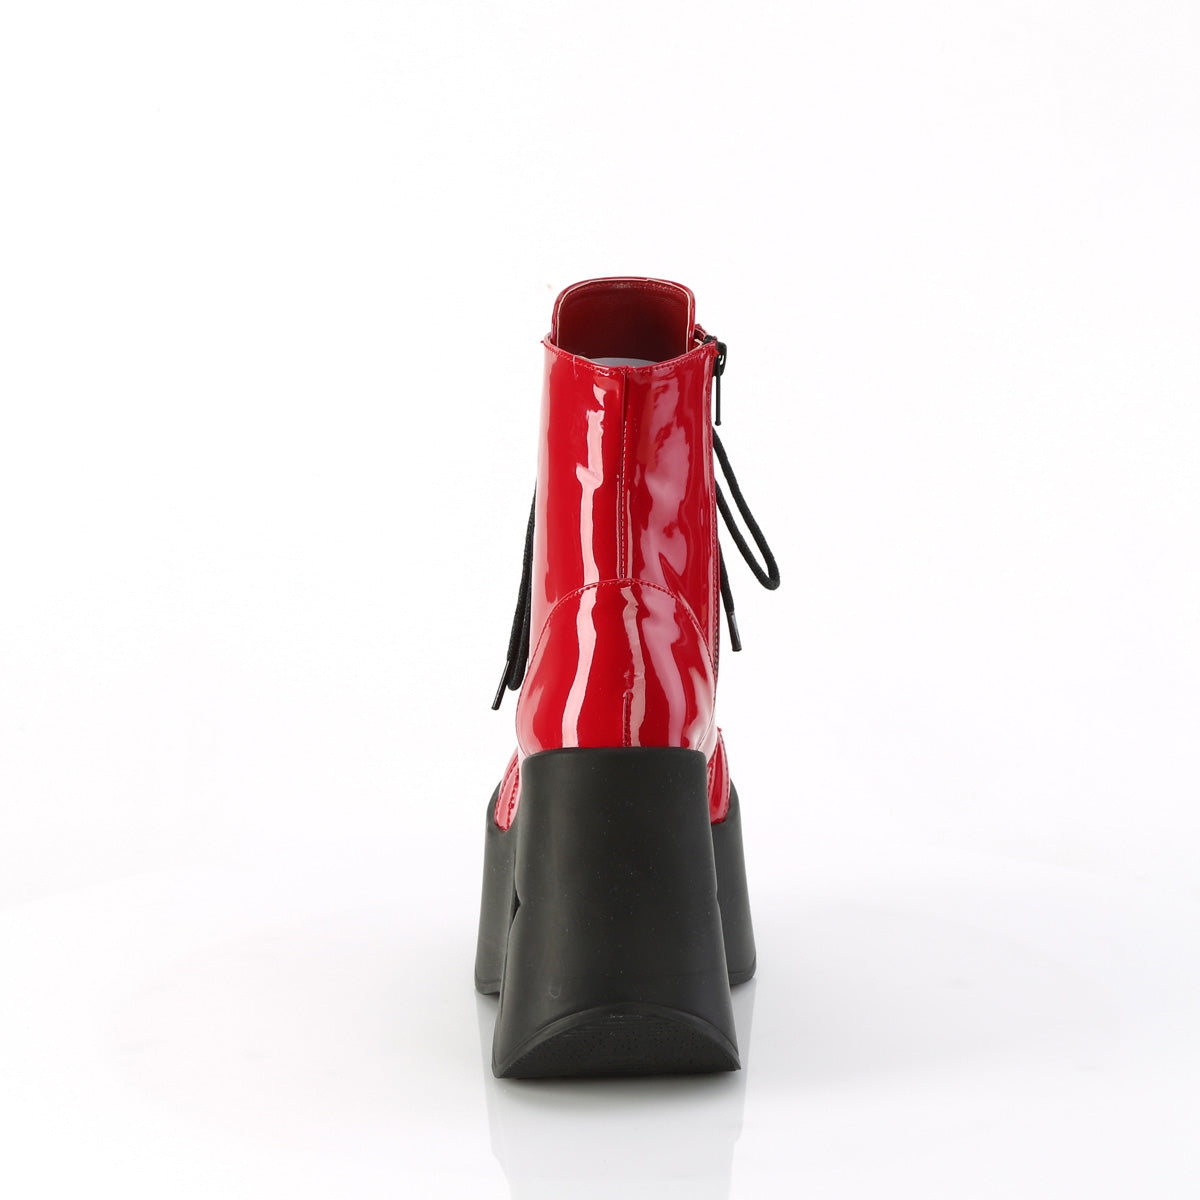 DYNAMITE-106 Demoniacult Alternative Footwear Women's Ankle Boots